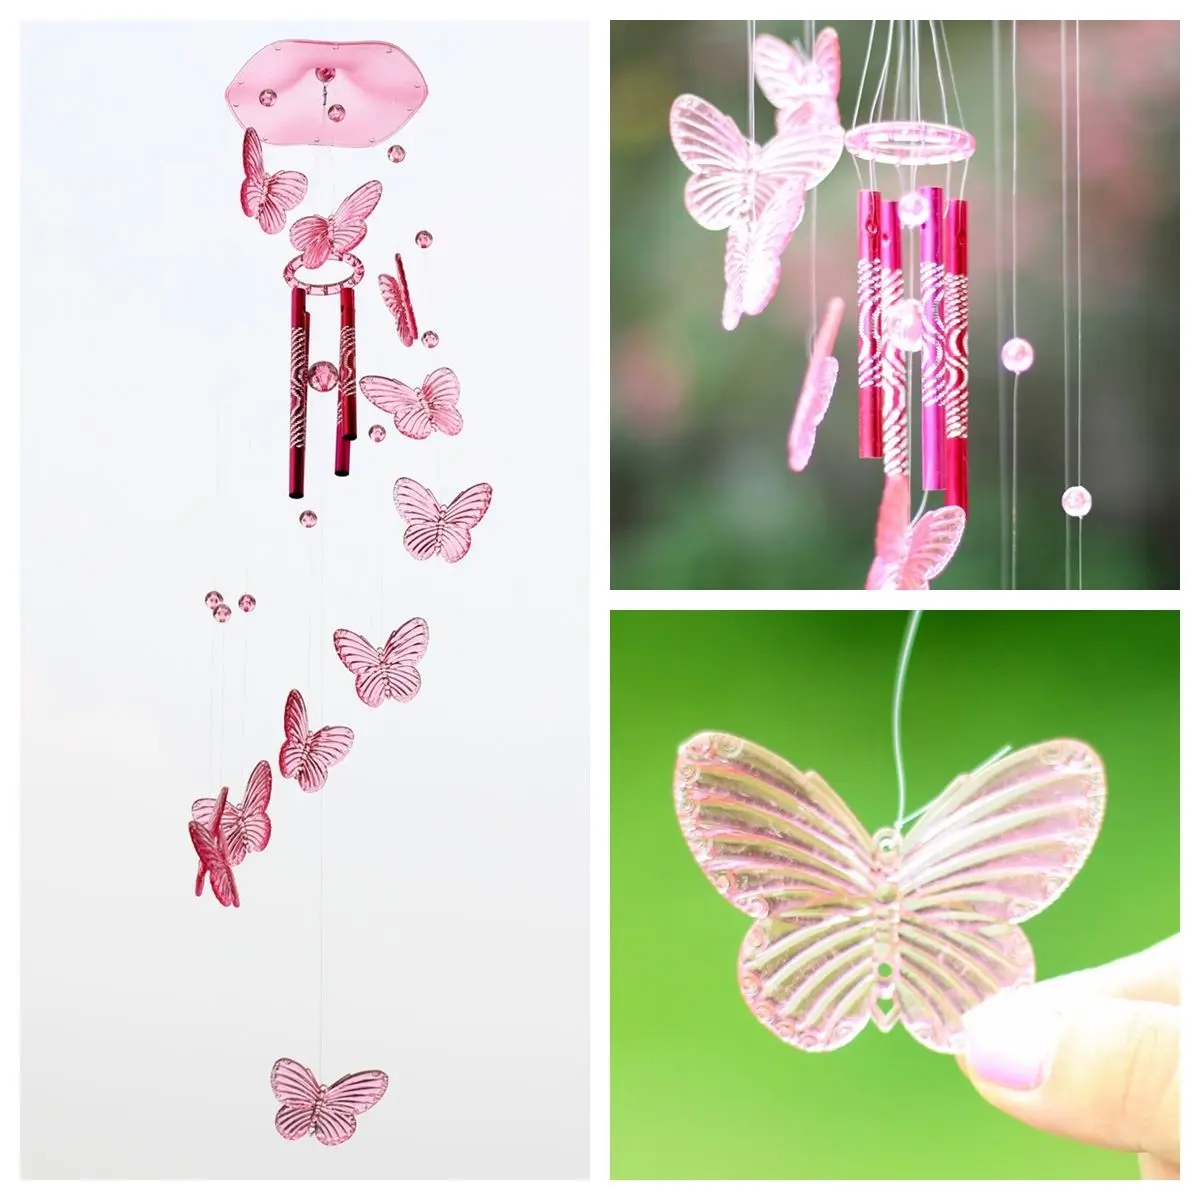 Хрустальная Бабочка Колокольчик колокольчик висящий сон орнамент Двор Сад комната фэн шуй украшение Colgante Campanul - Цвет: Pink